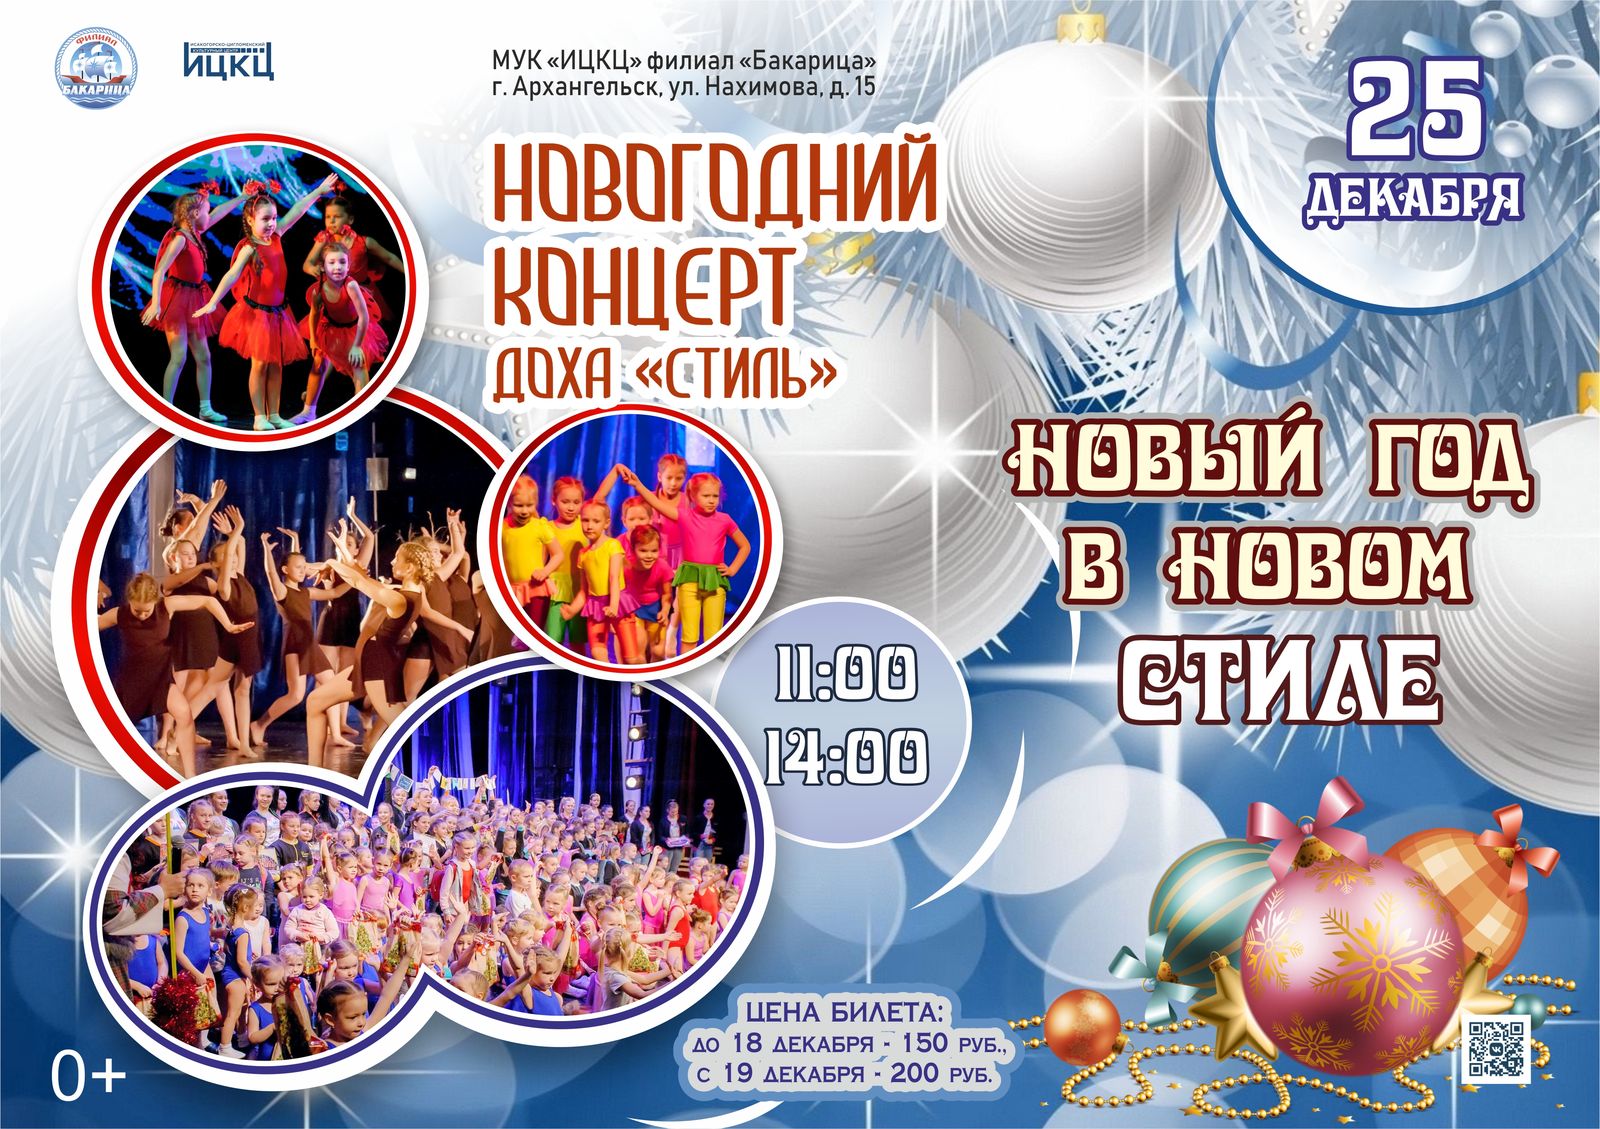 Новогодний концерт ДОХА «Стиль» «Новый год в новом СТИЛЕ»